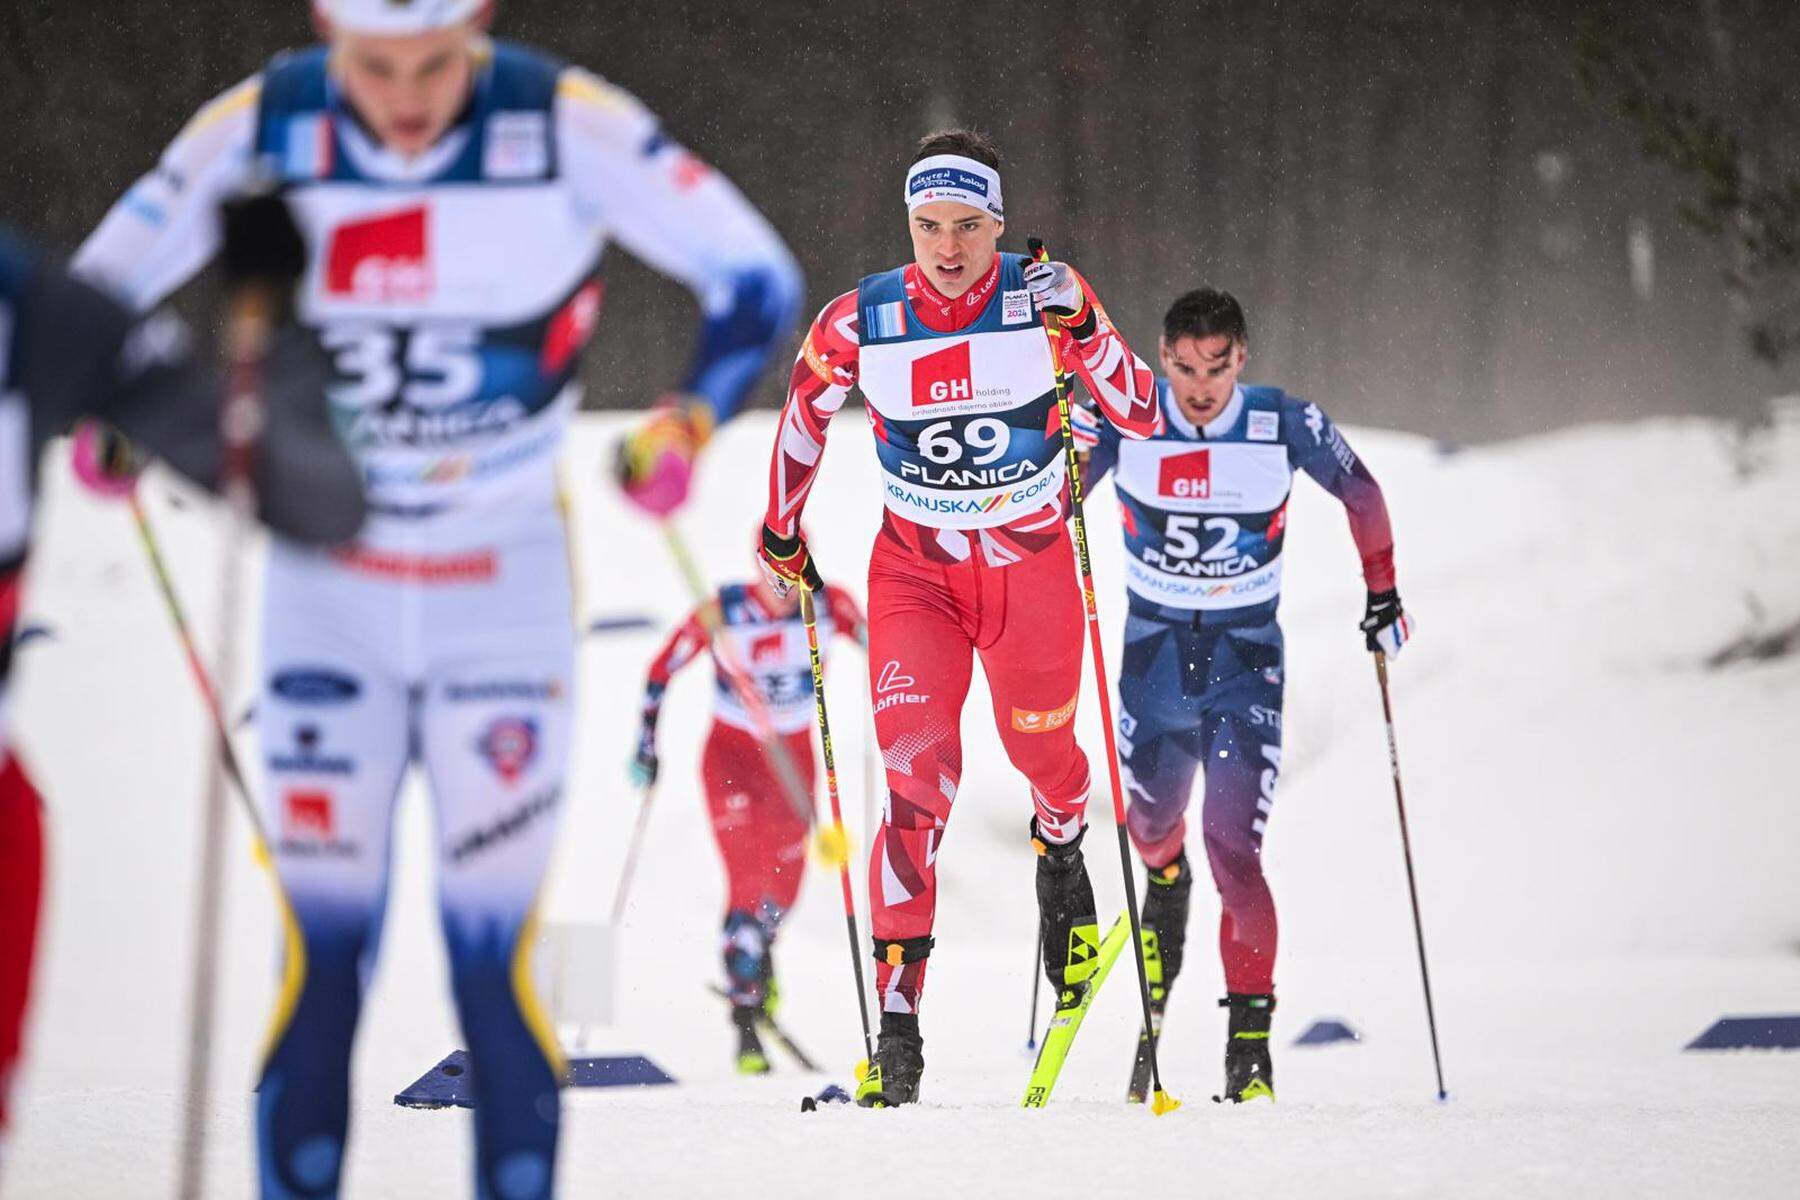 Langlauf-Weltcup-Debüt: Christian Steiner: Ein kleiner Sturkopf, der alles aus sich herausholt 